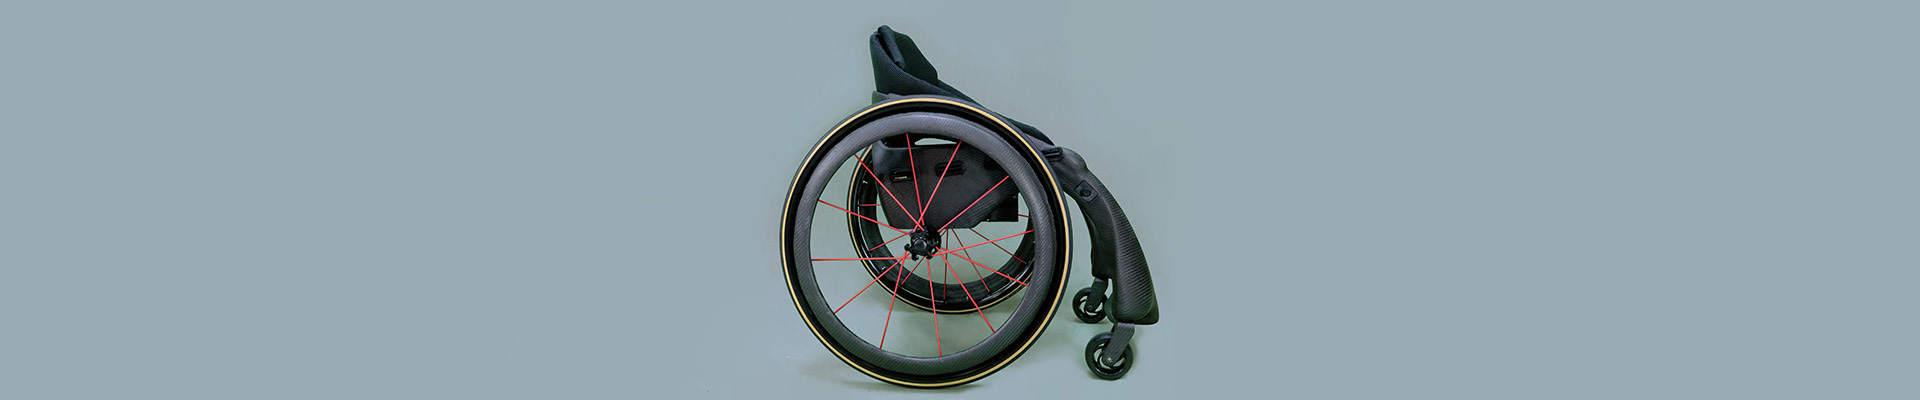 Phoenix i Wheelchair 1